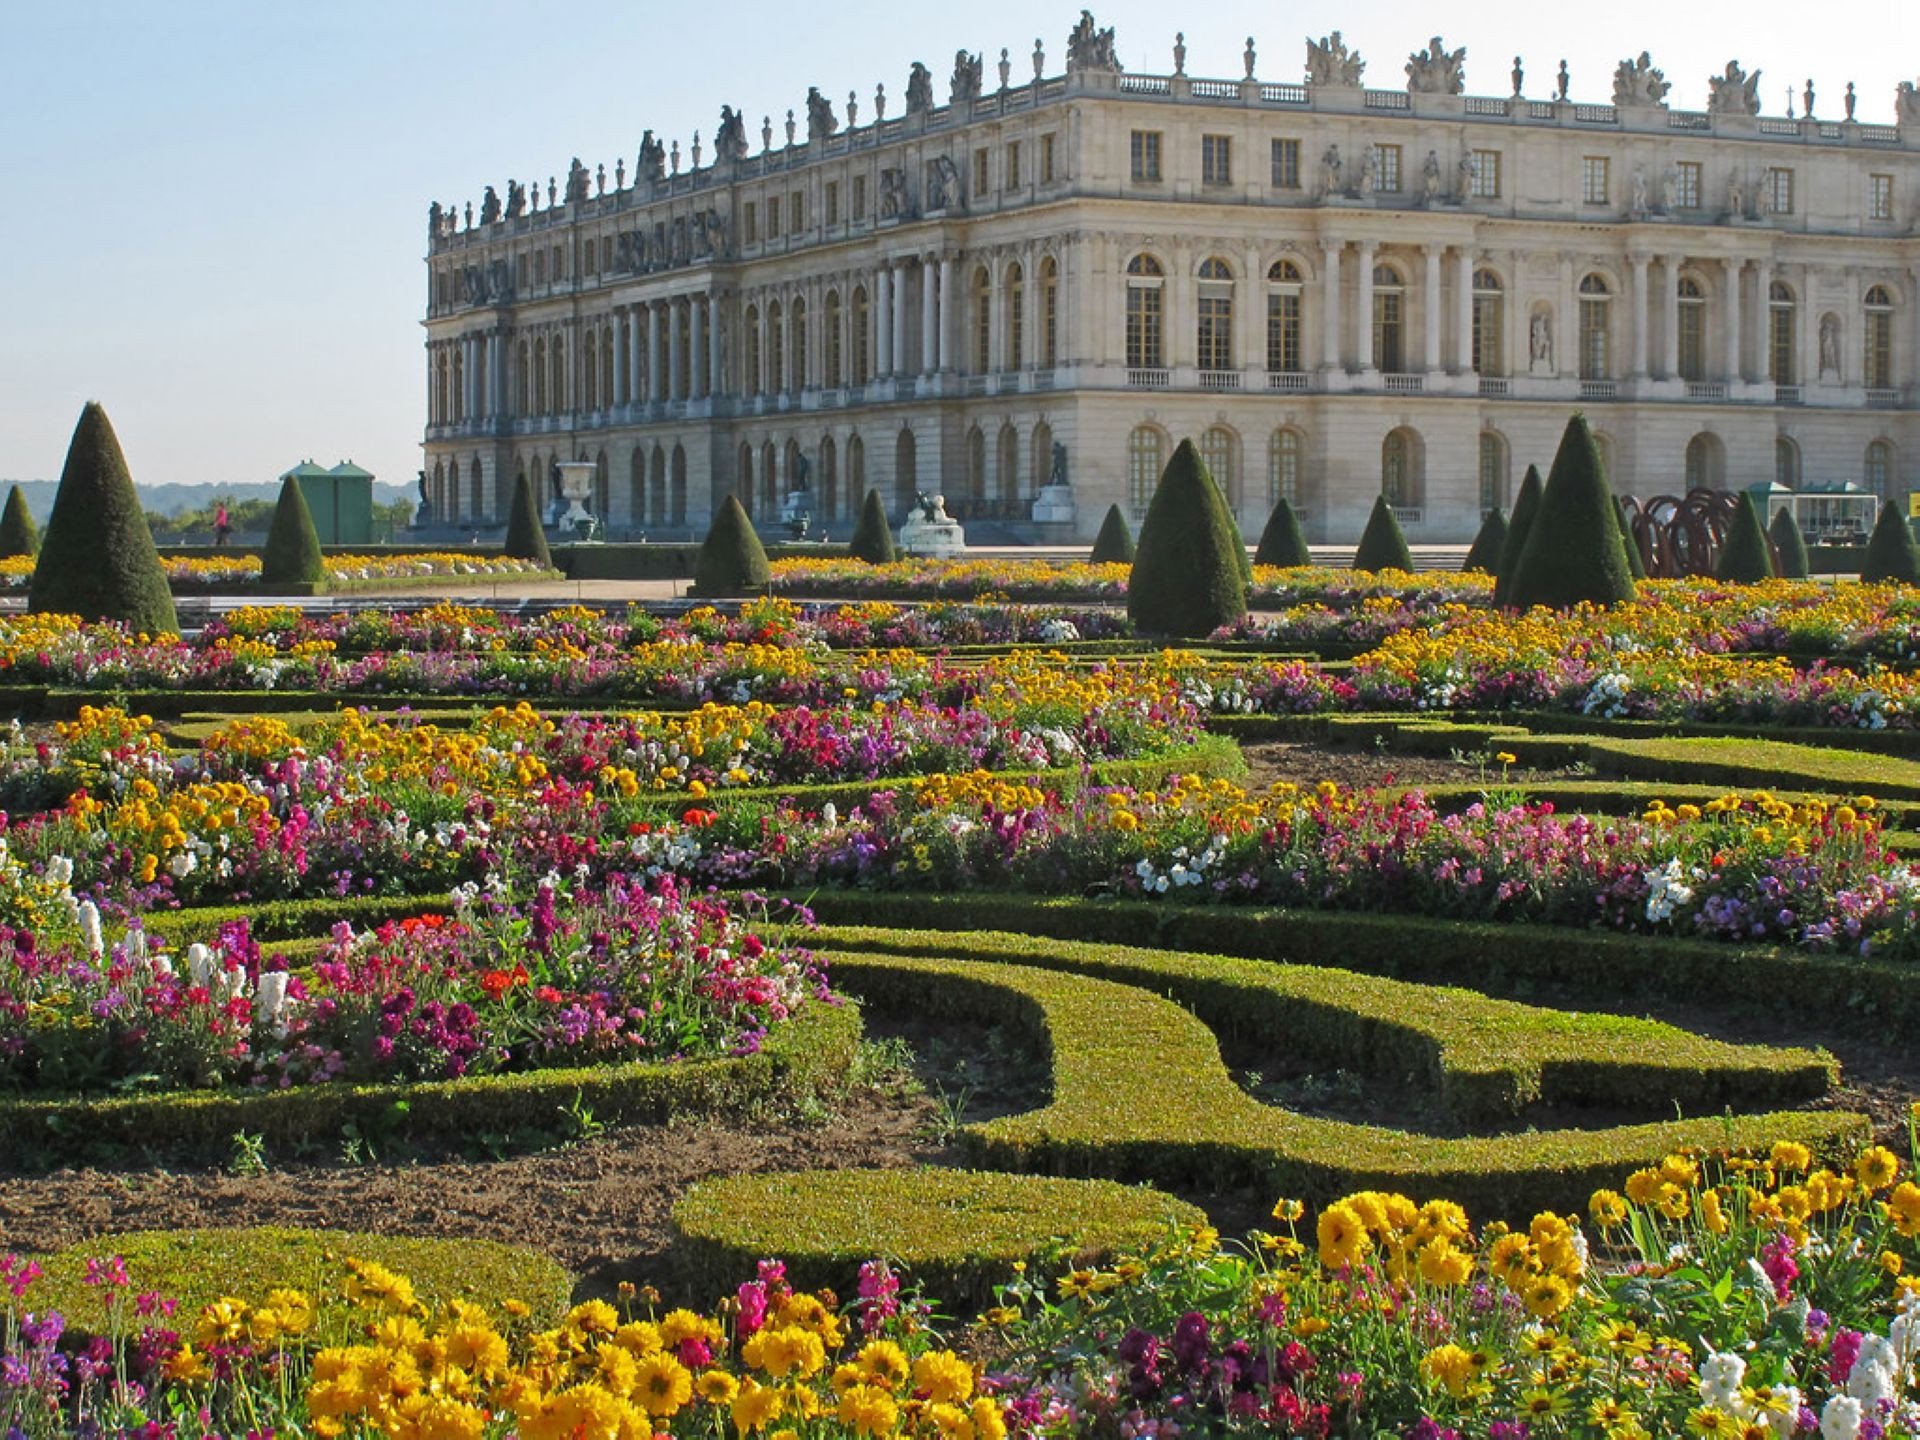 Chateau versailles. Версальский дворец. Версаль. Версальский дворец дворцы Франции. Замок Версаль в Париже. Версальский дворец и сады во Франции.